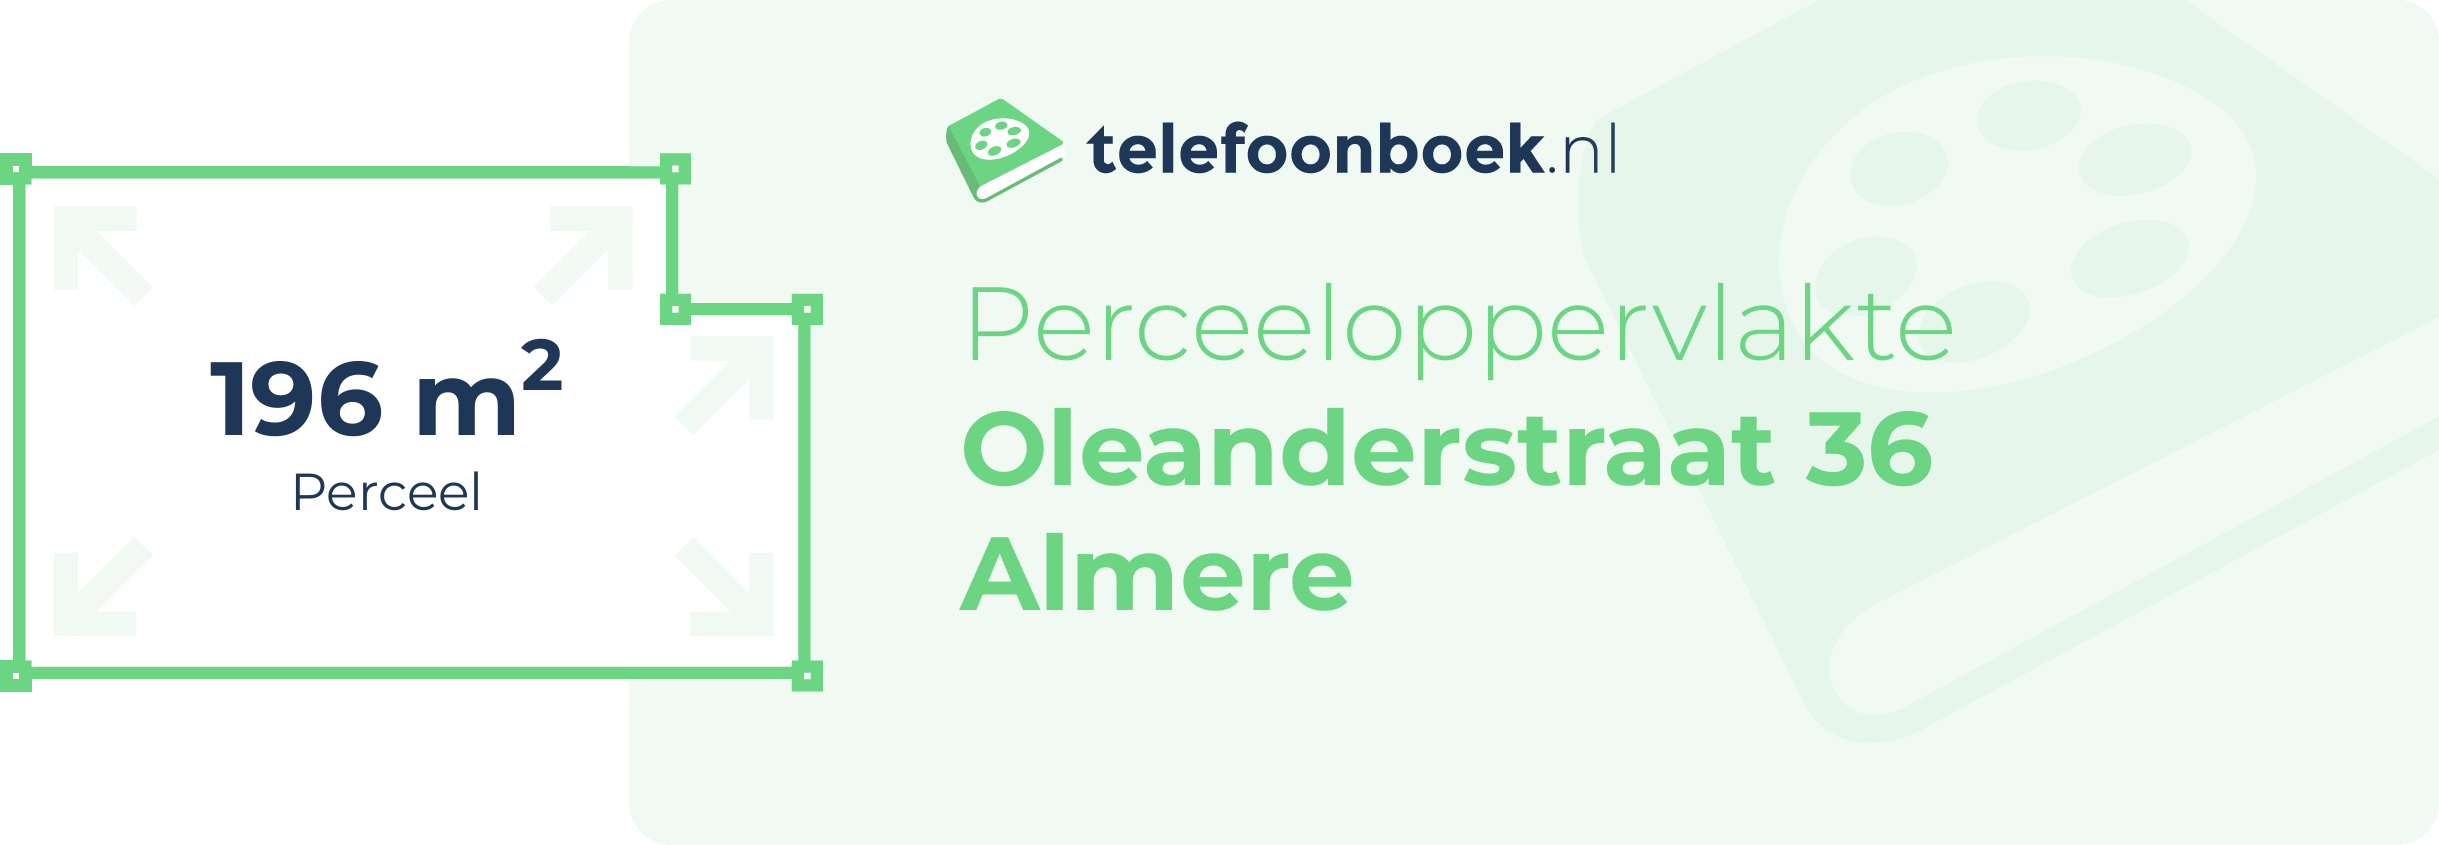 Perceeloppervlakte Oleanderstraat 36 Almere